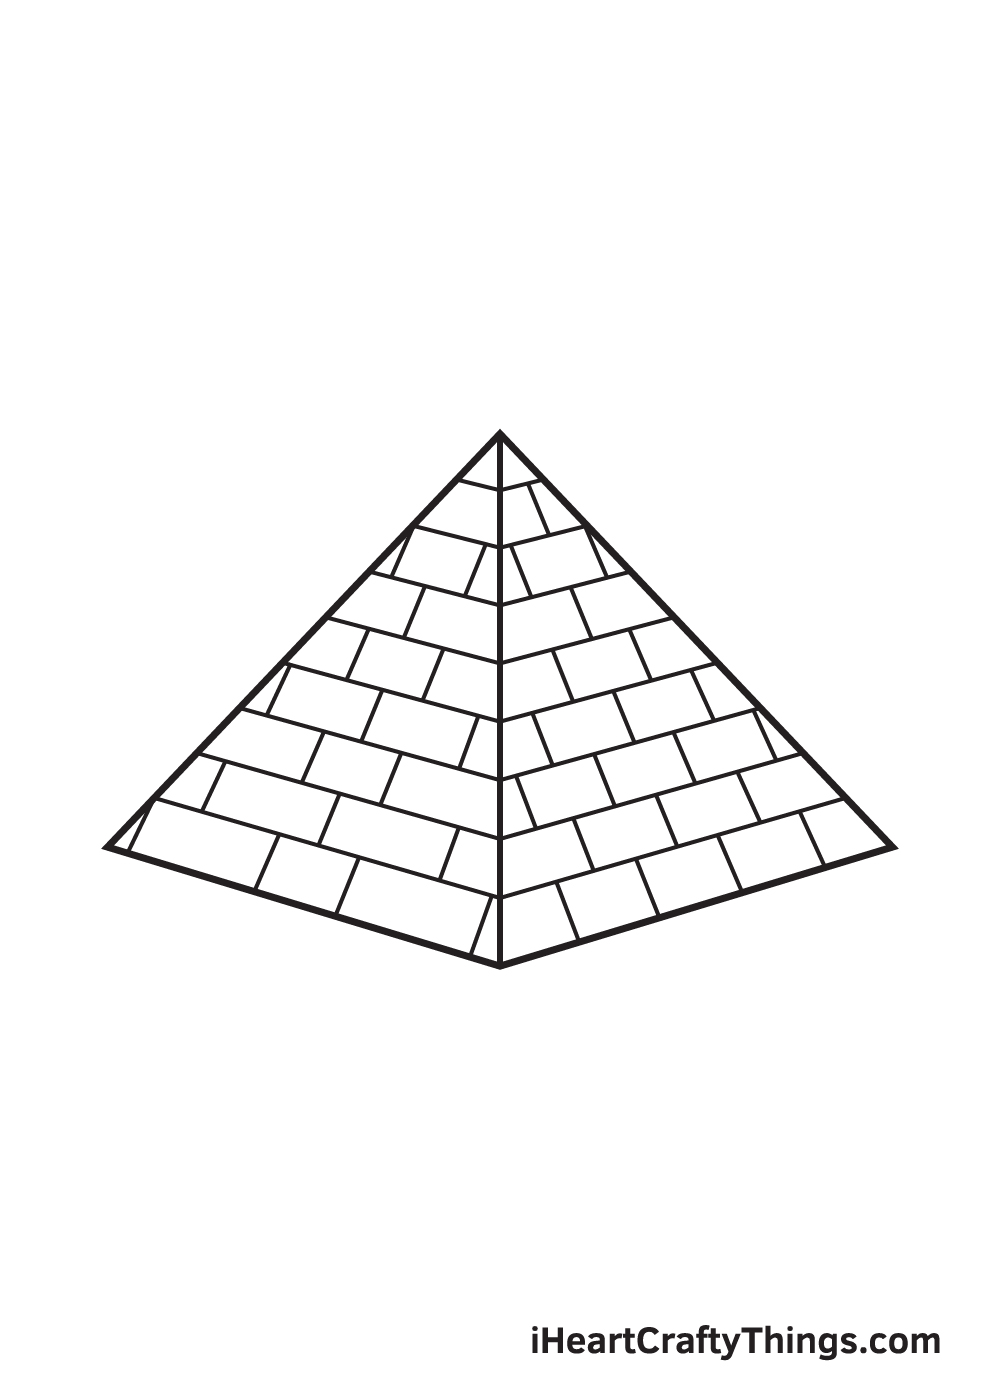 Pyramid DRAWING – STEP 9 - Hướng dẫn cách vẽ kim tự tháp đơn giản với 9 bước